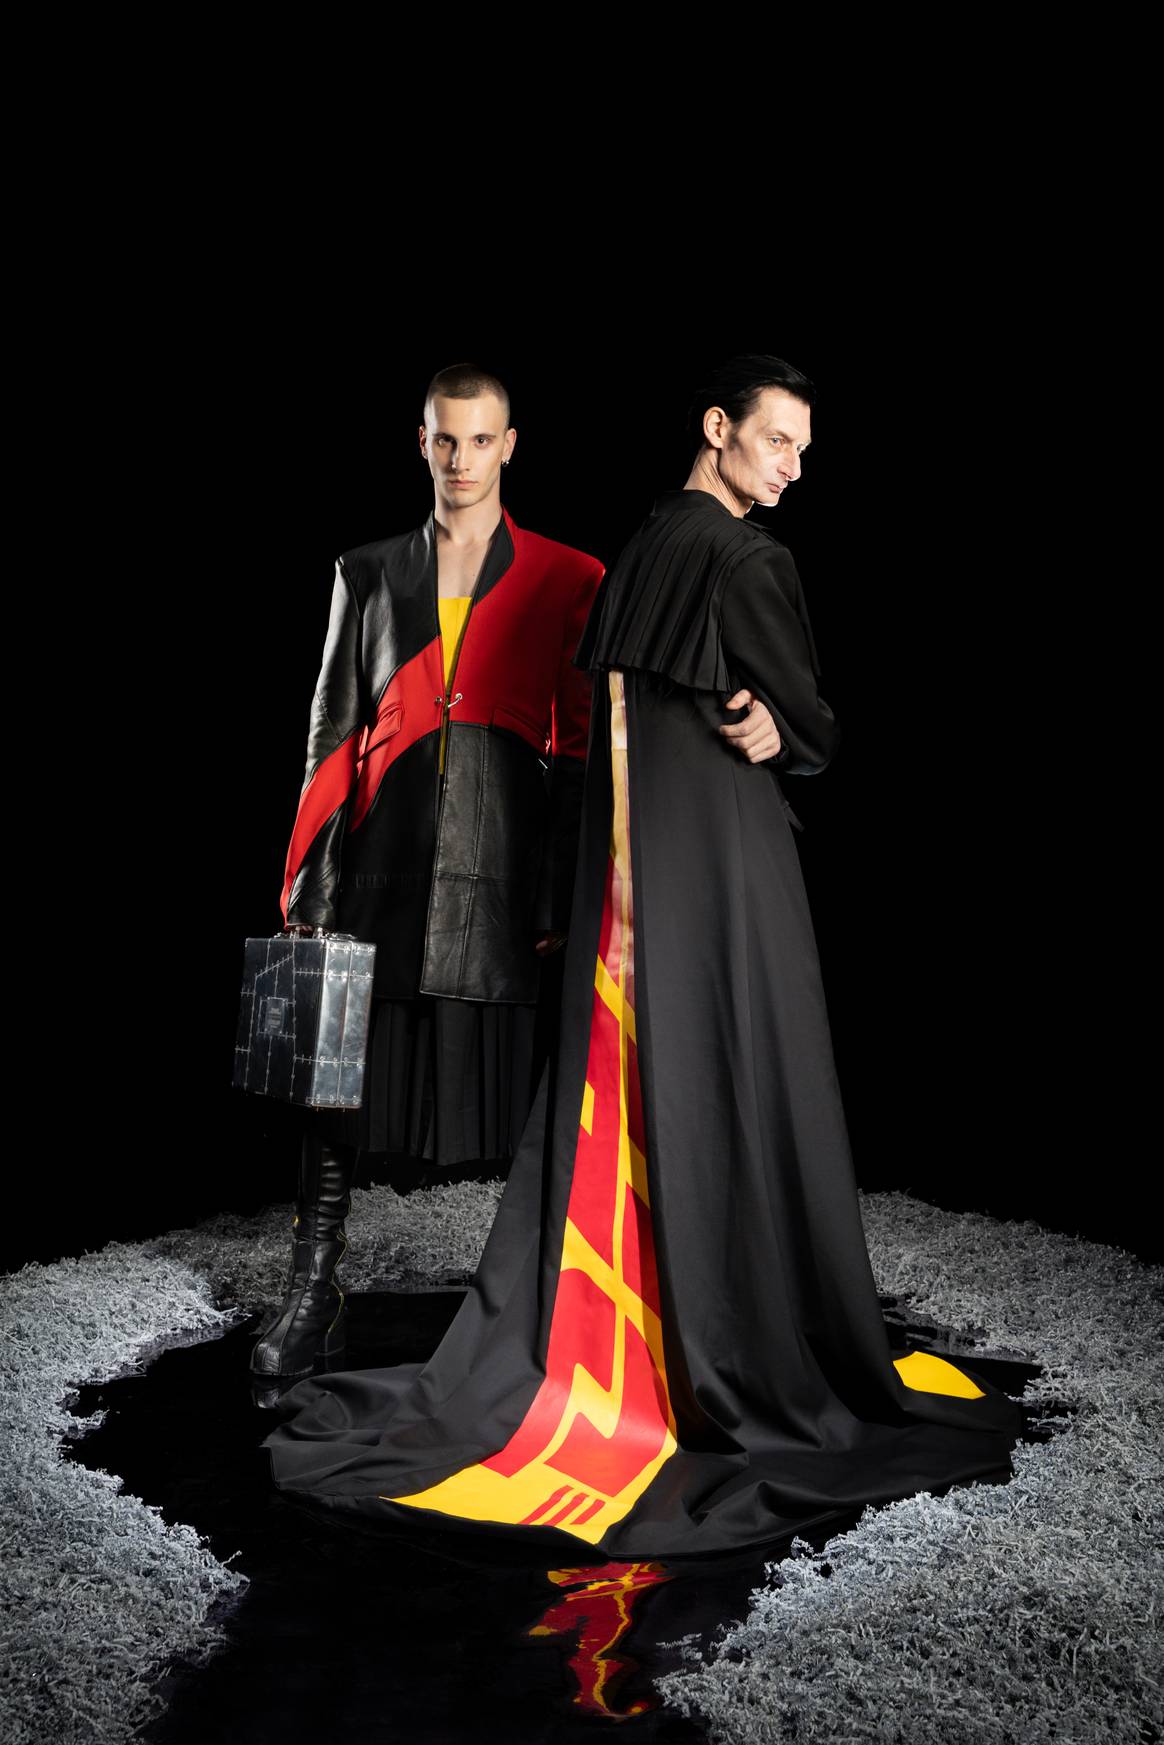 Lederblazer und Mantel mit Schleppe sind in den typischen Farben Schwarz, Rot und Gelb gehalten.